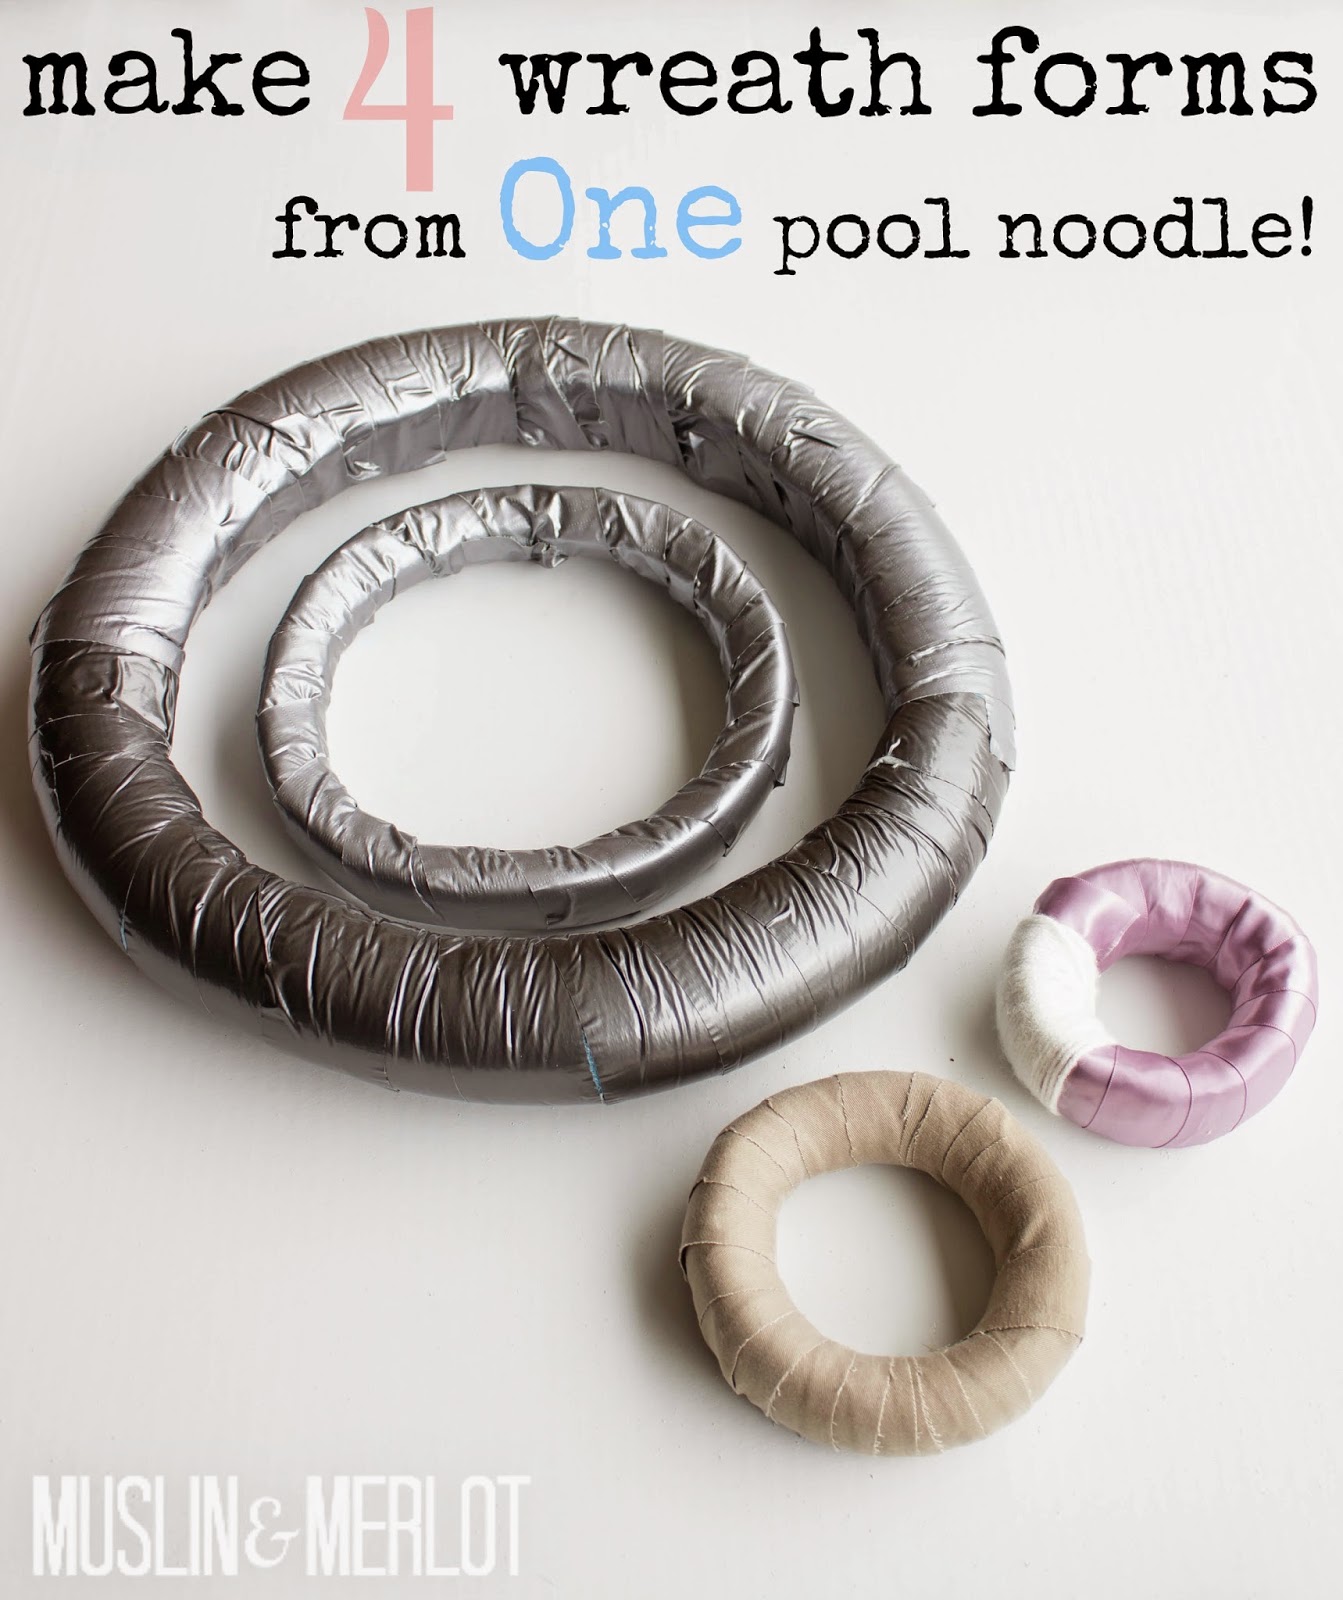 DIY pool noodle wreath forms